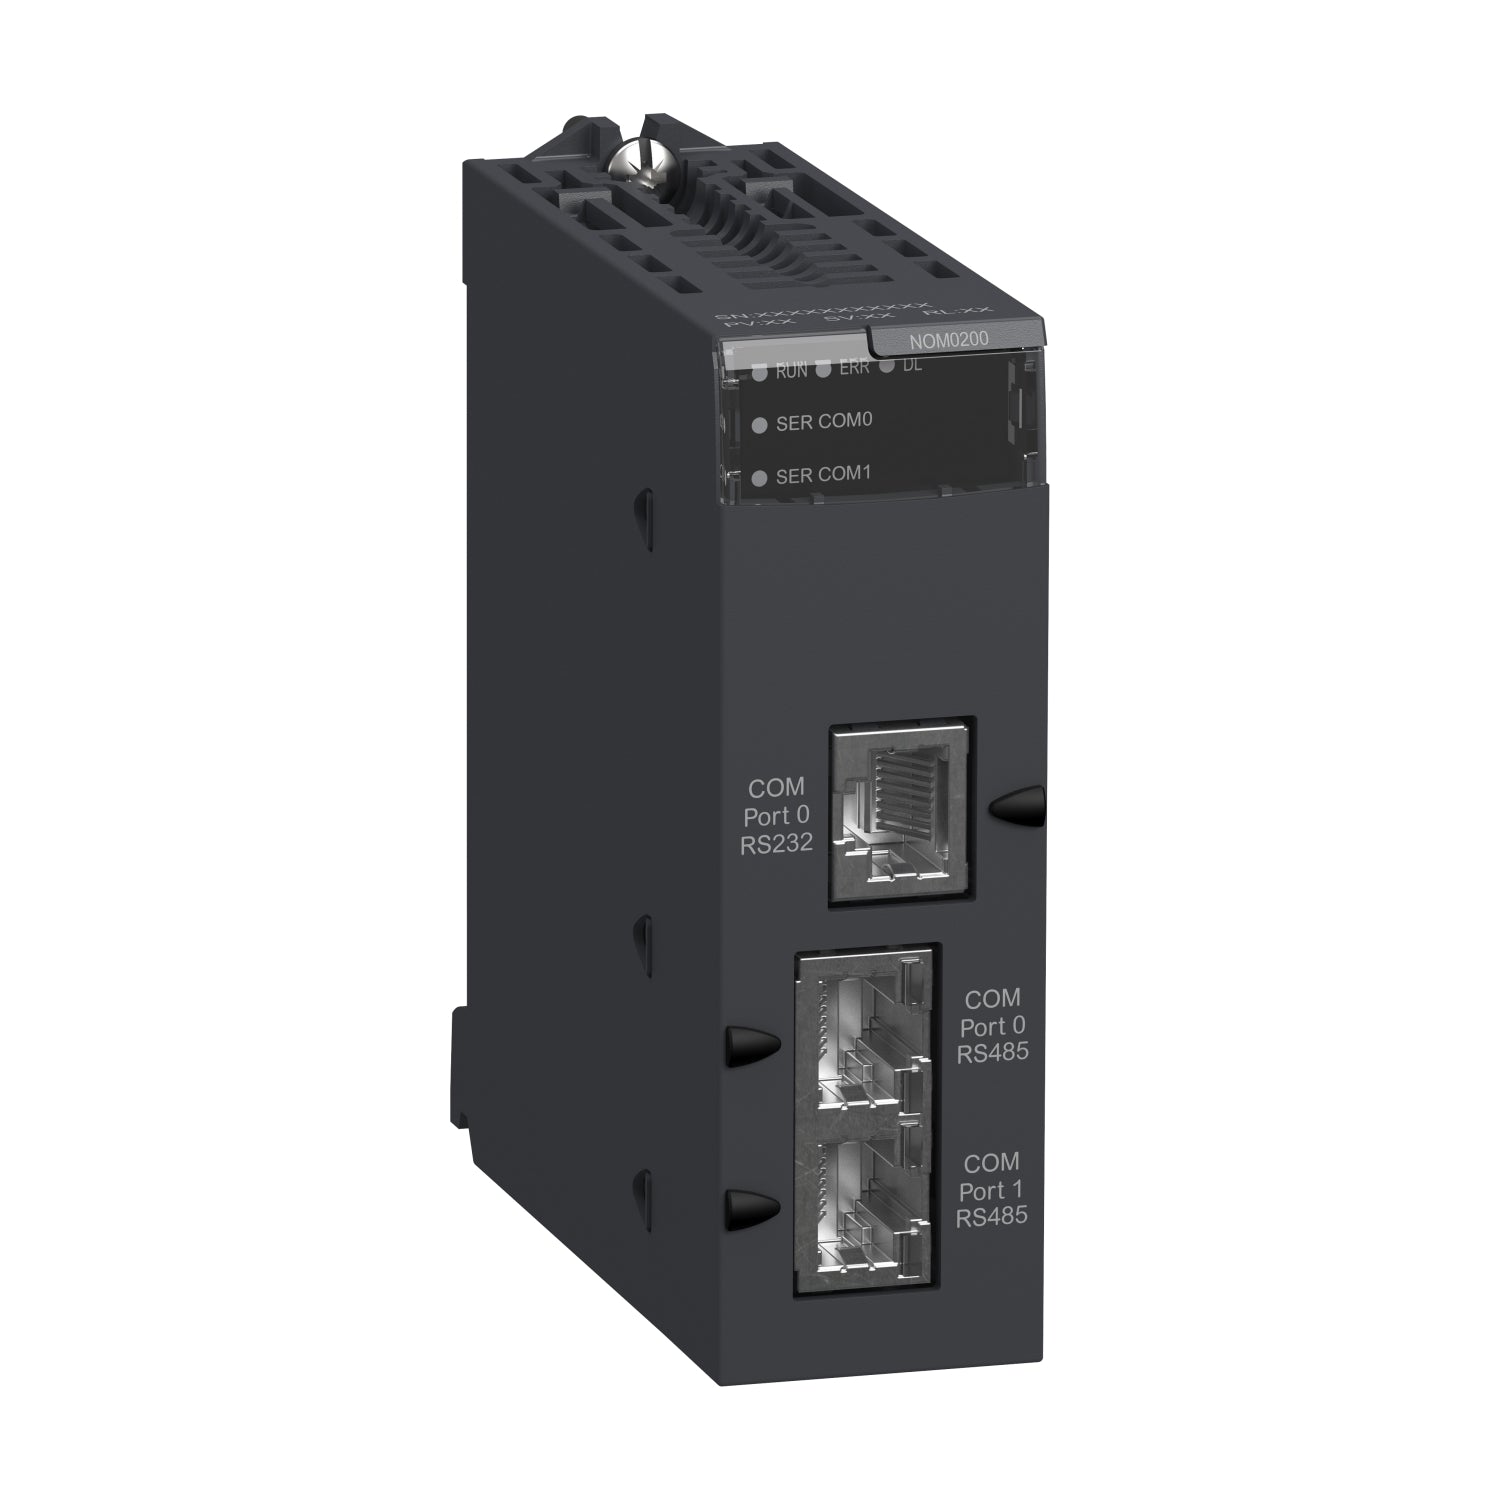 BMXNOM0200 | Schneider Electric Communication module